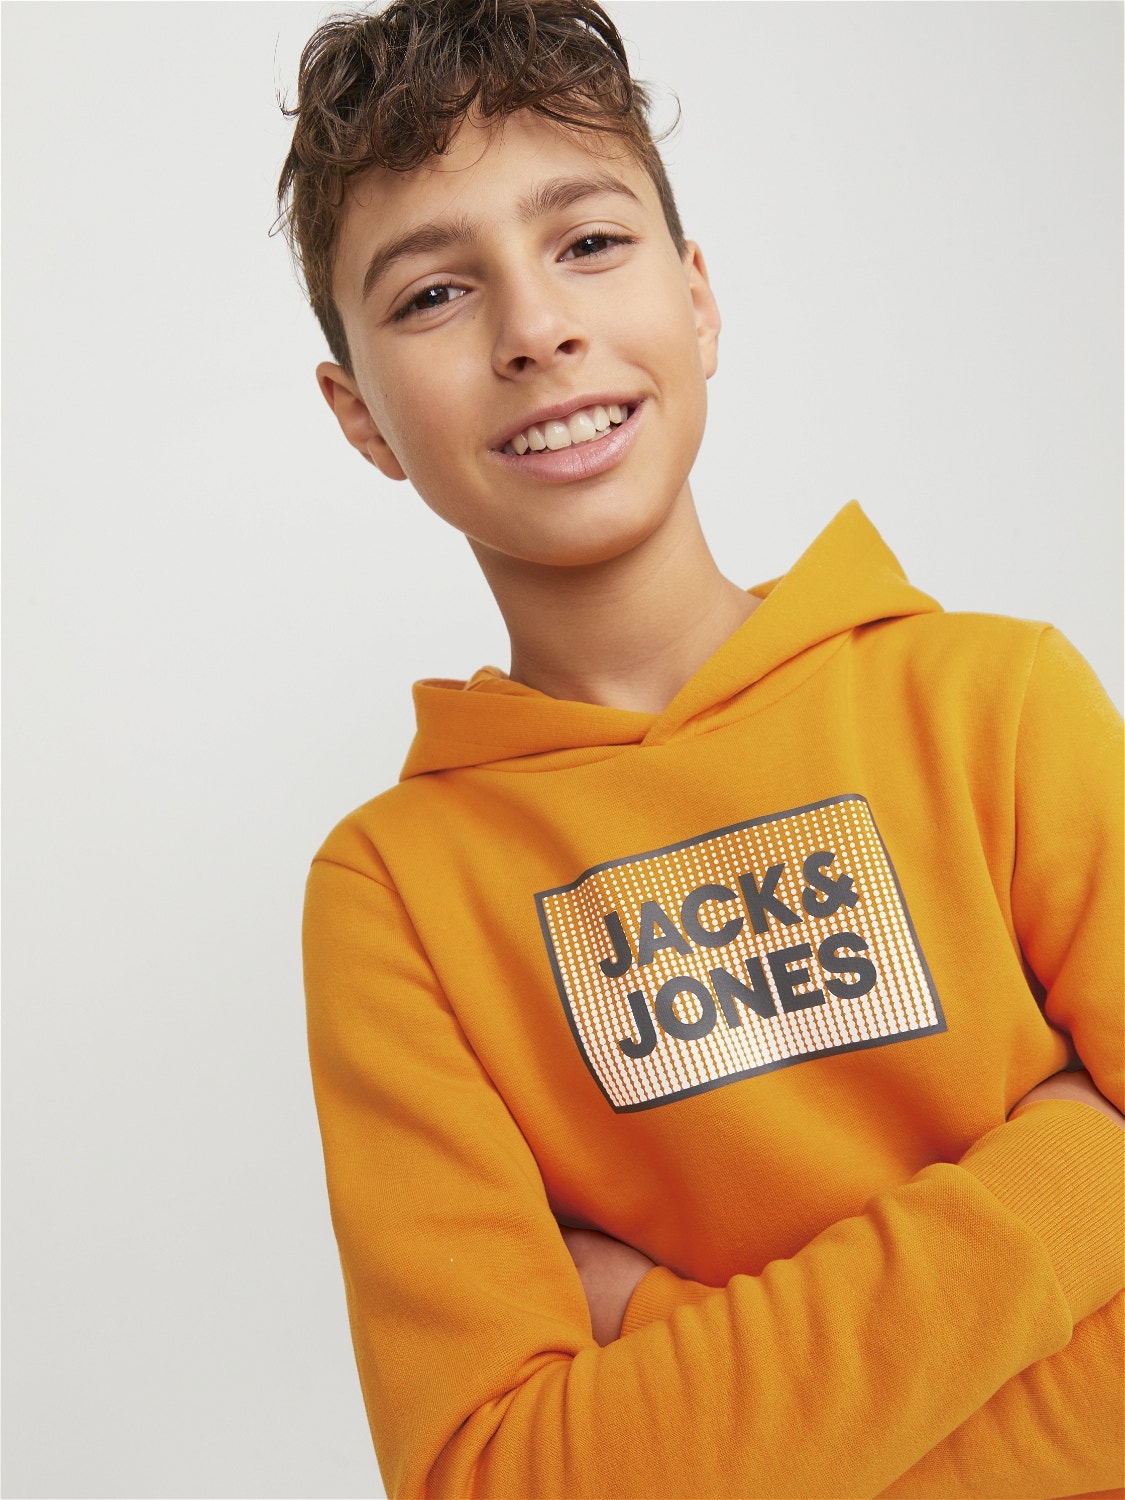 Jack & Jones Printed Hoodie For boys -Dark Cheddar - 12249653